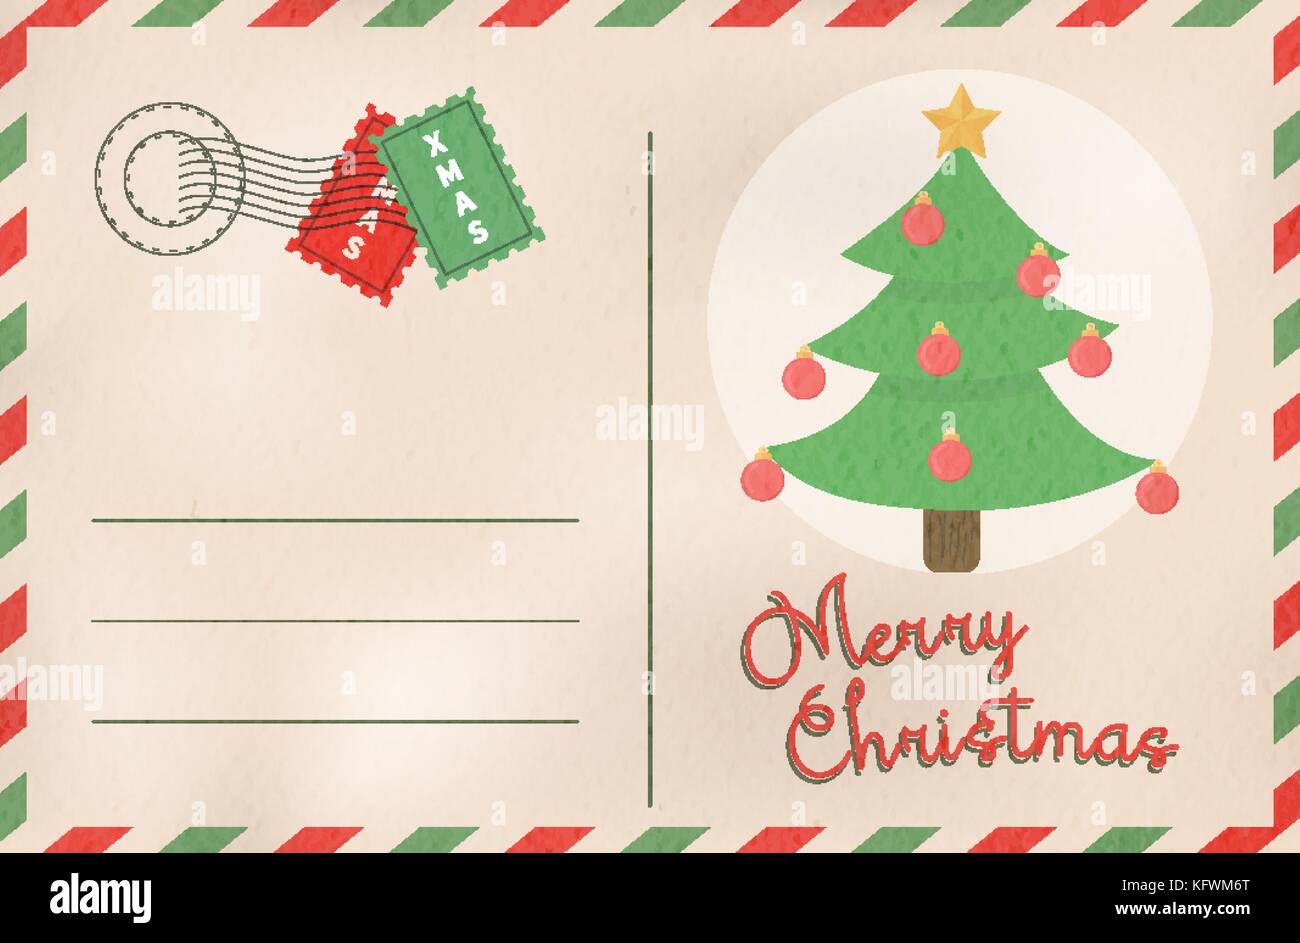 Frohe Weihnachten vintage Grußkarte in traditionellen Postkarte mail Stil. Urlaub Design mit xmas Pine Tree Cartoon und leeren Raum für Feier m Stock Vektor